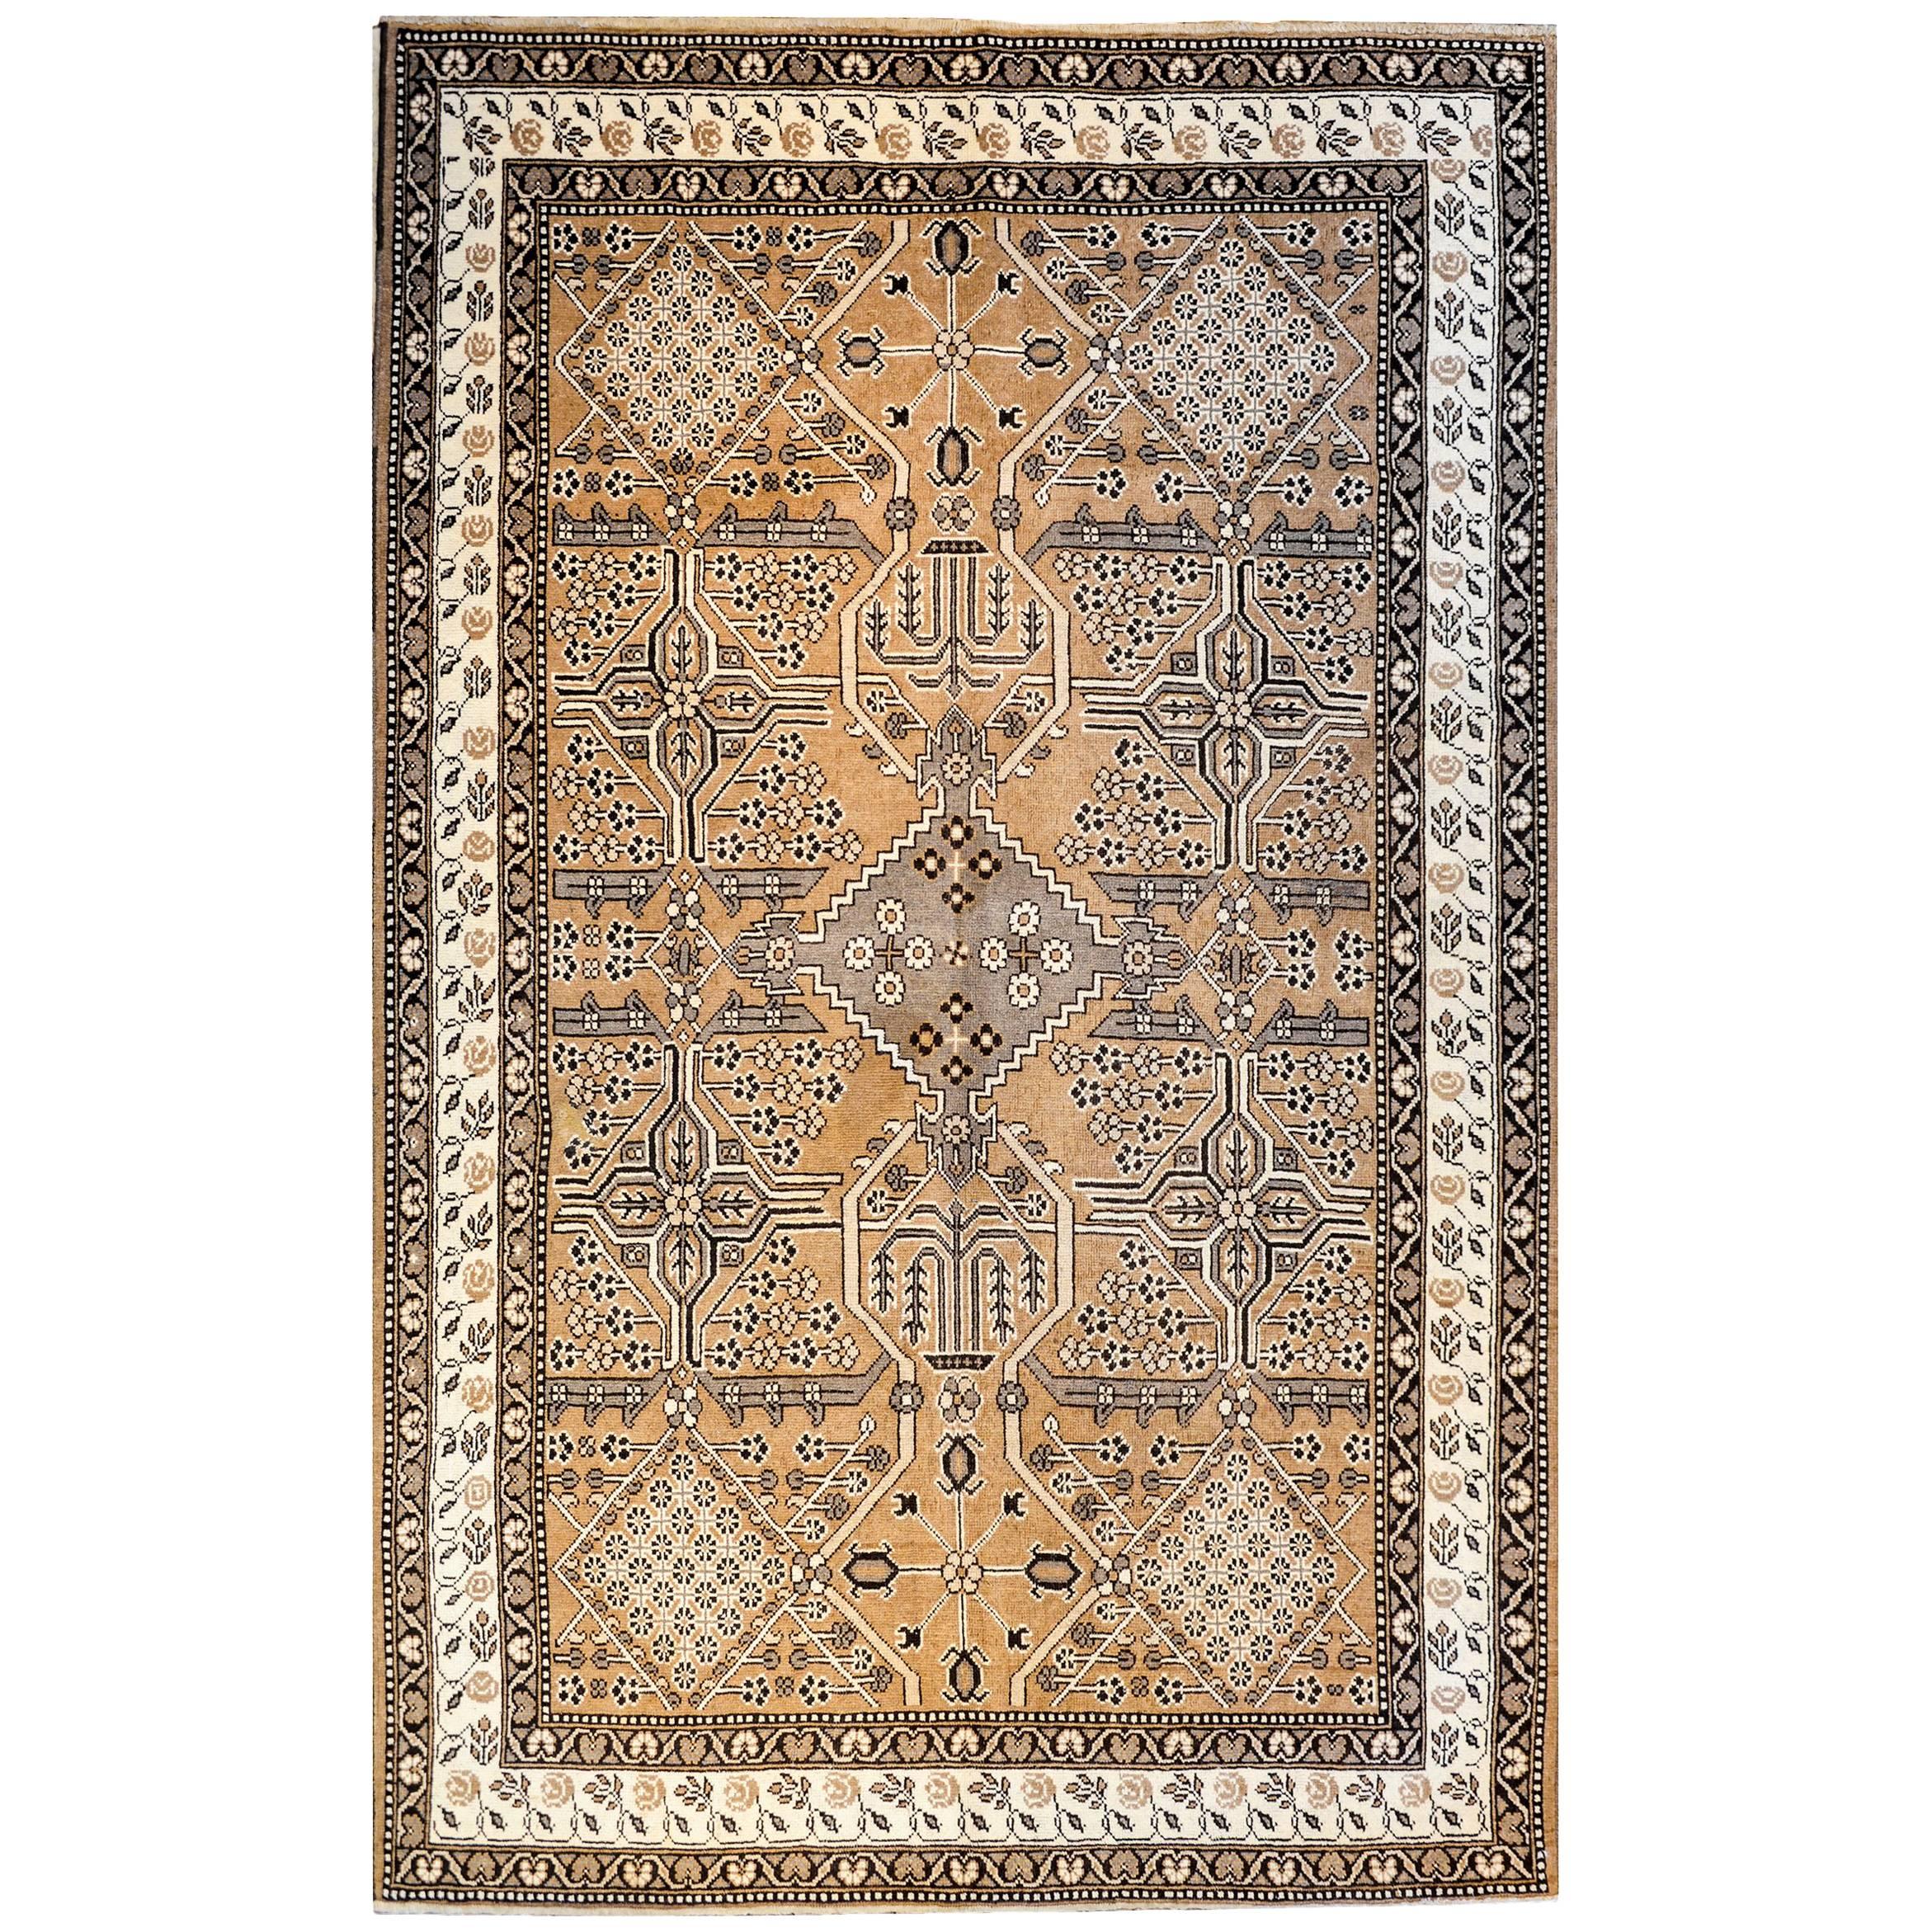 Bakhtiari-Teppich aus dem frühen 20. Jahrhundert, Wunderschön